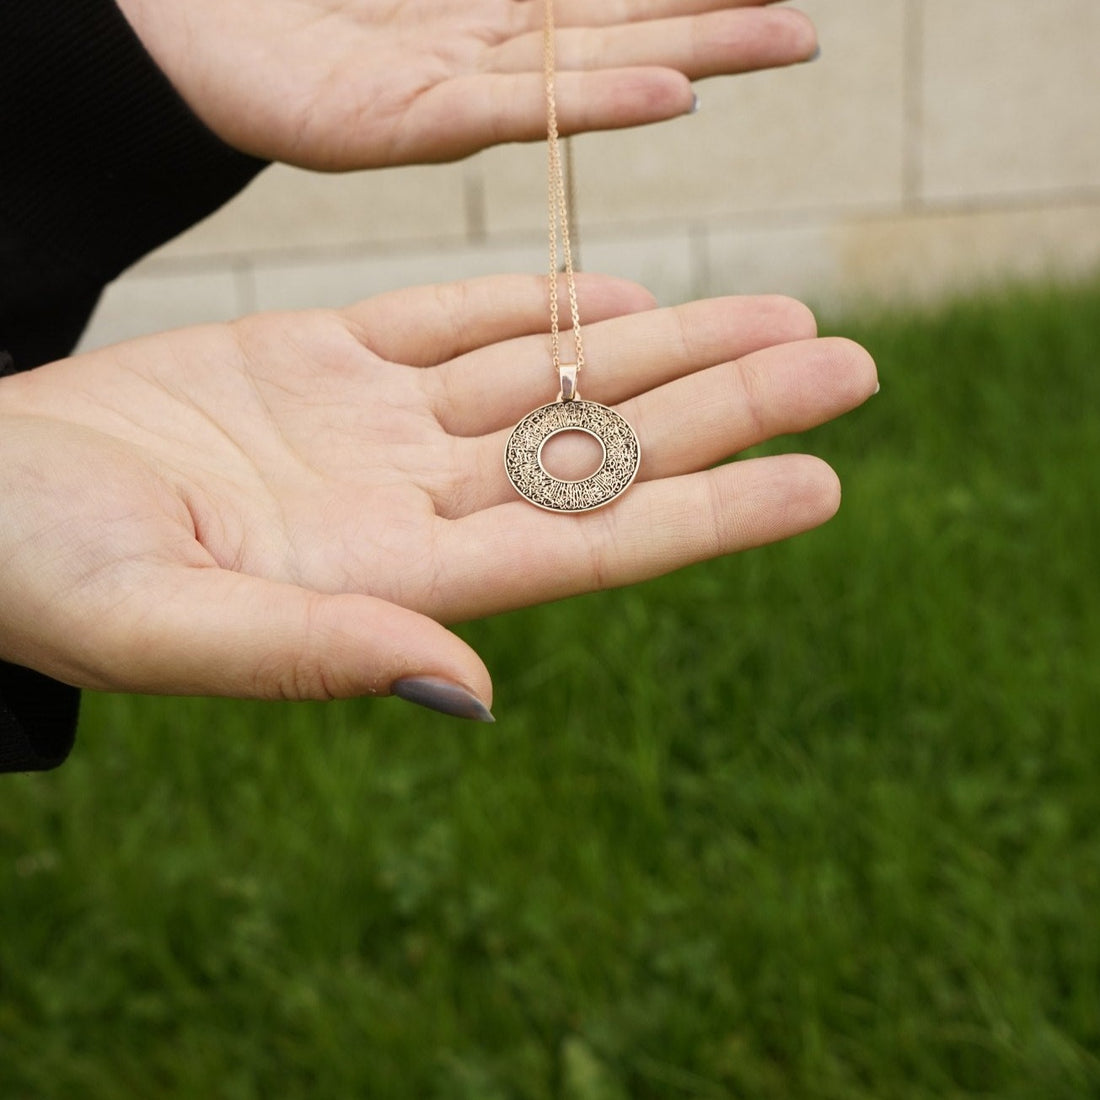 islamic-jewelry-dayatul-kursi-circle-islamic-necklace-18k-gold-pendant-on-925-silver-women&